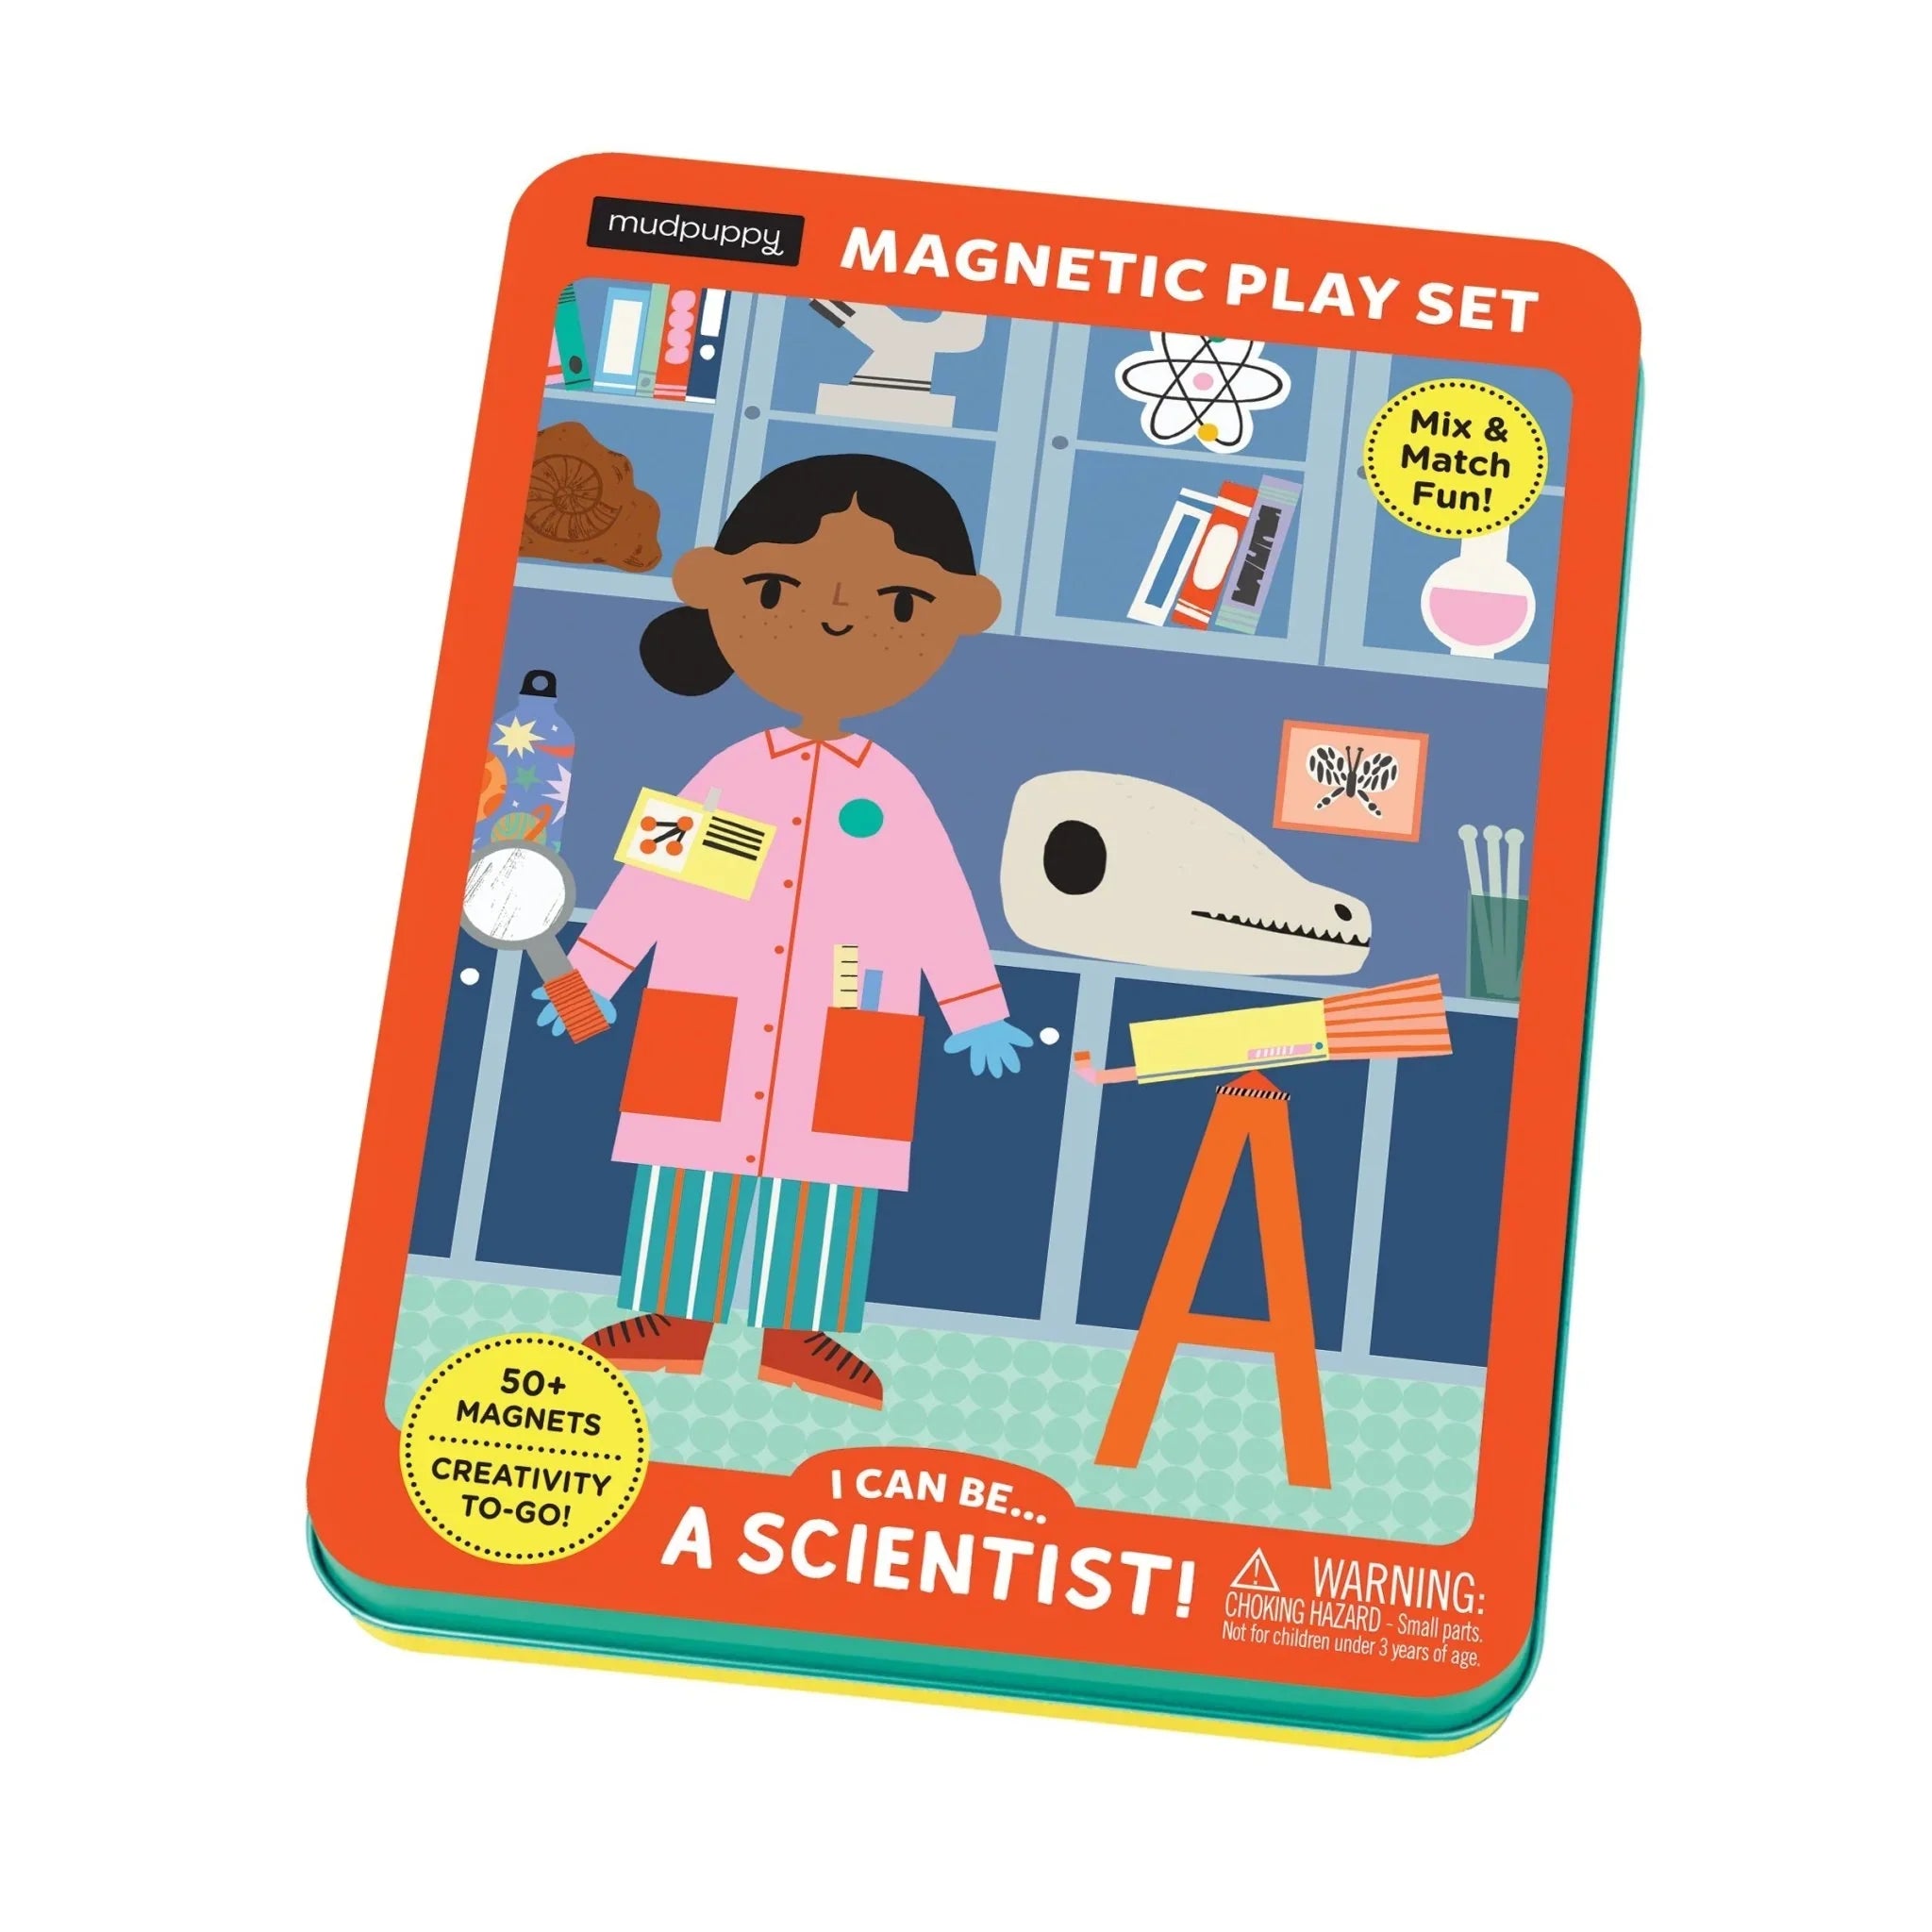 Mudpuppy: personagens magnéticos eu posso me tornar ... cientista!